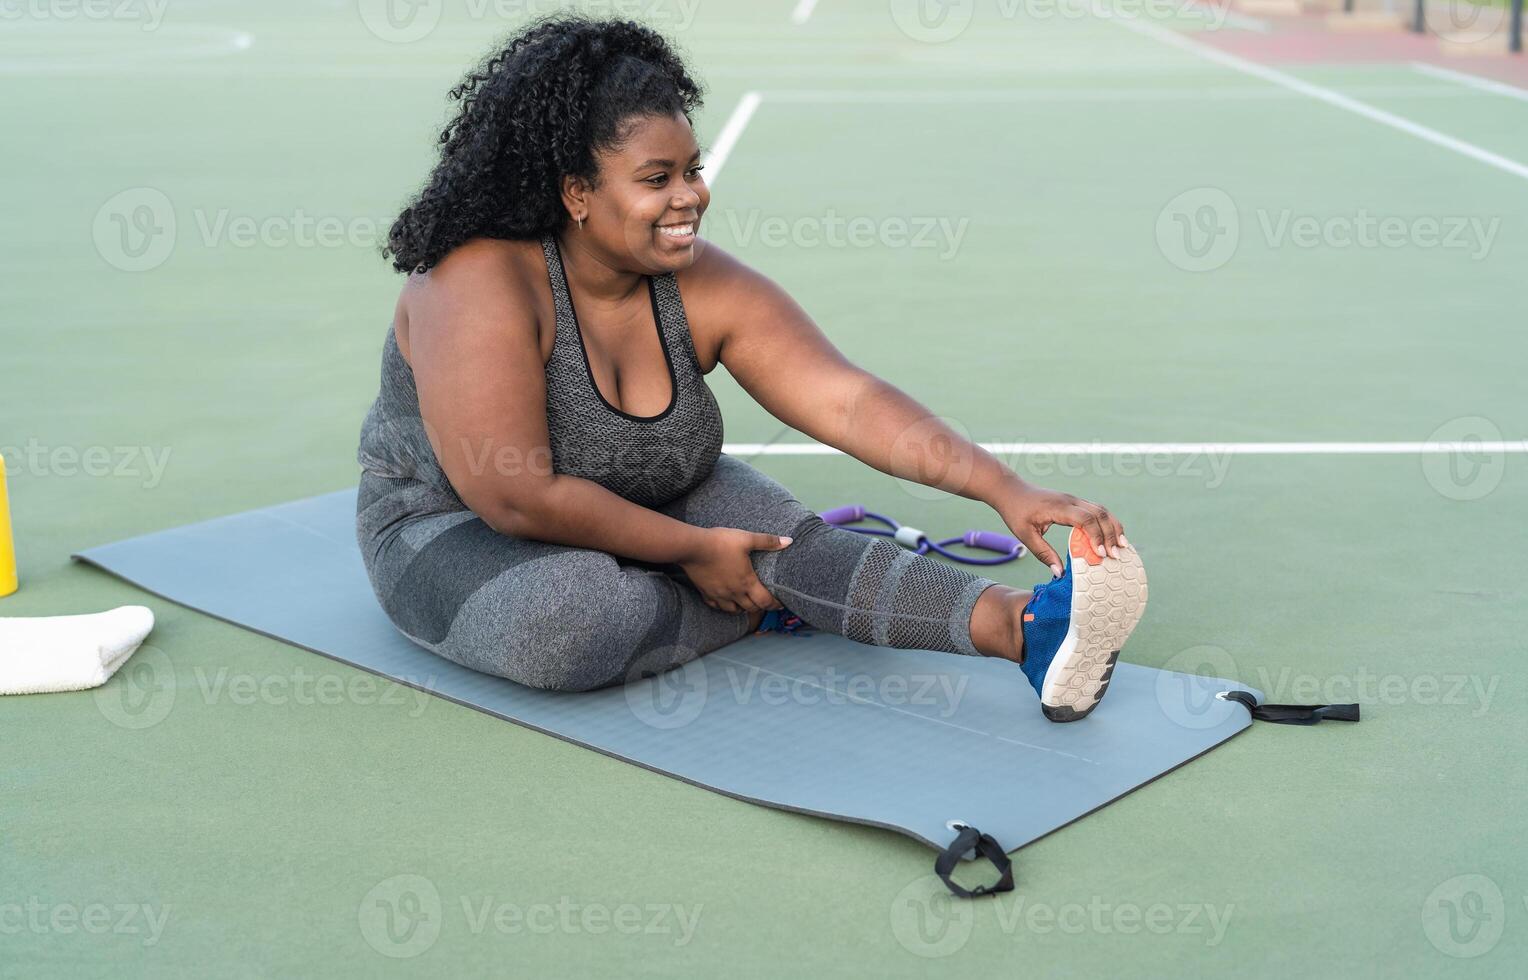 kurvig afro kvinna håller på med stretching övningar session - ung afrikansk kvinna har roligt Träning utomhus- - sportig människor livsstil begrepp foto